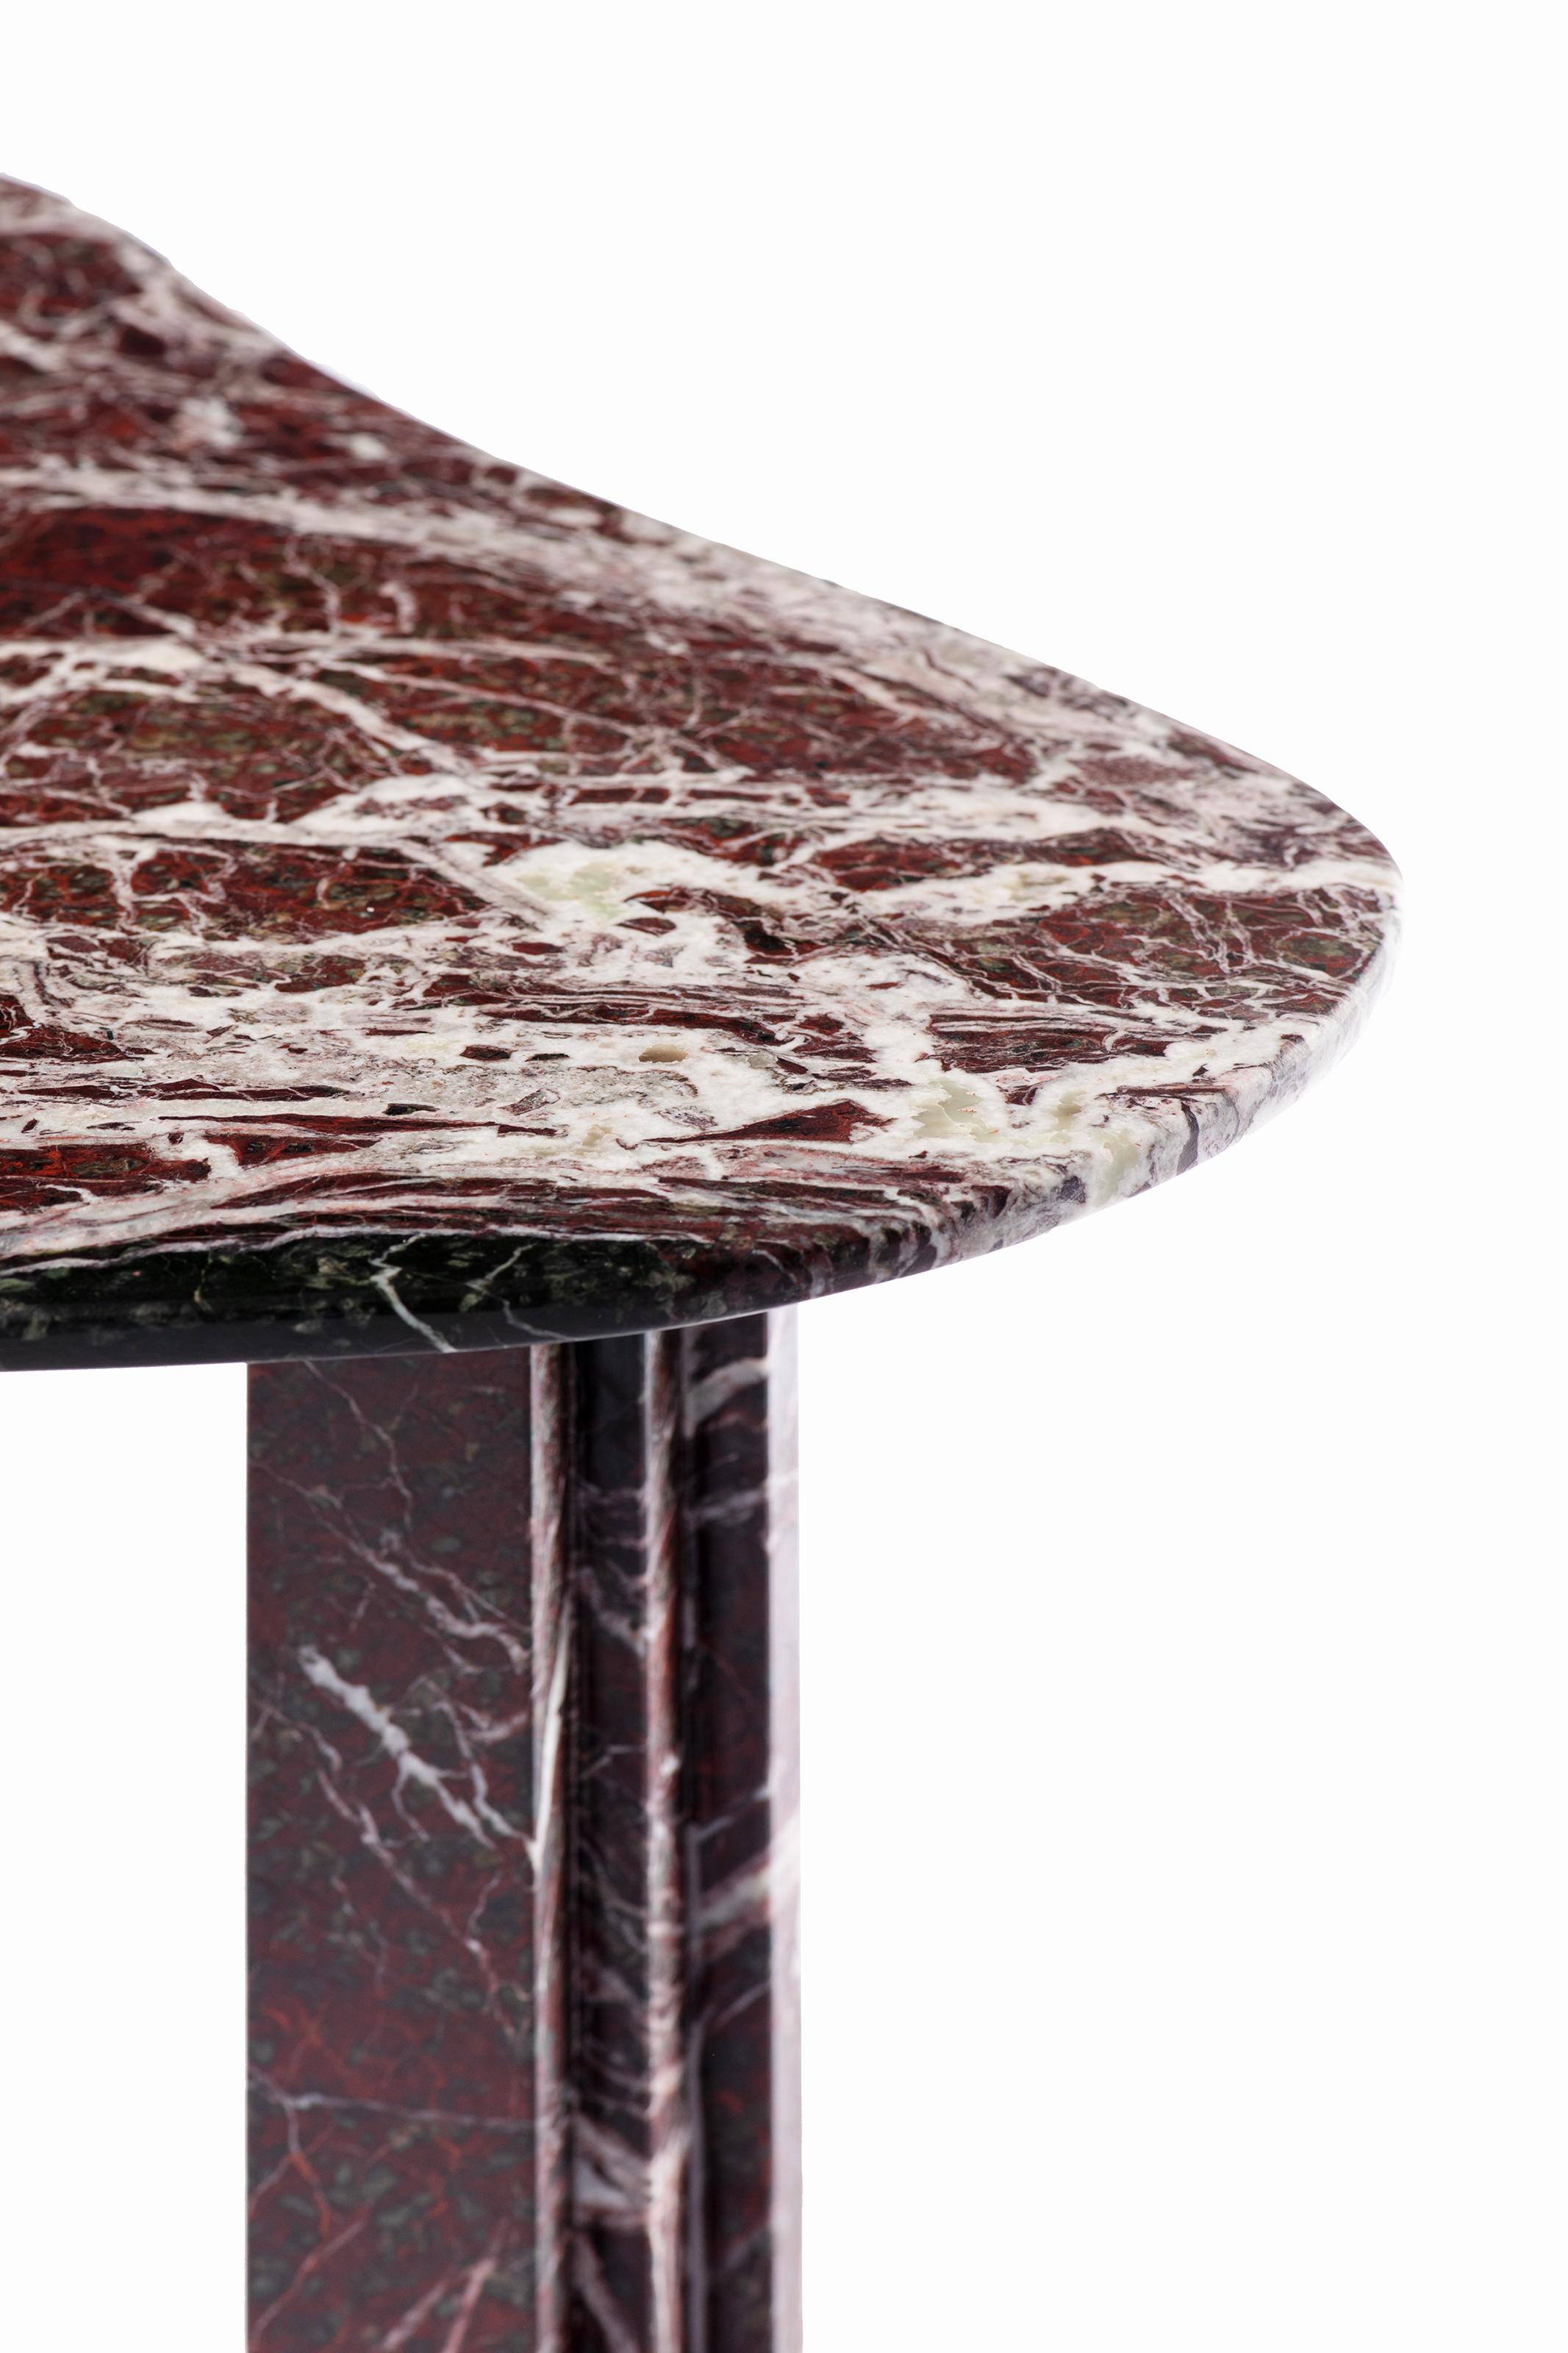 Skulpturaler Tisch aus rotem Marmor - Lorenzo Bini

Titel: Sie sagte

Maßnahmen: 
- esstisch 190 x 125 x H 73,5 cm
- couchtisch 95 x 63 x H 37 cm

Material: Rosso Levanto


SIX TABLEAUX ist eine Serie von Marmortischen, die von Lorenzo Bini